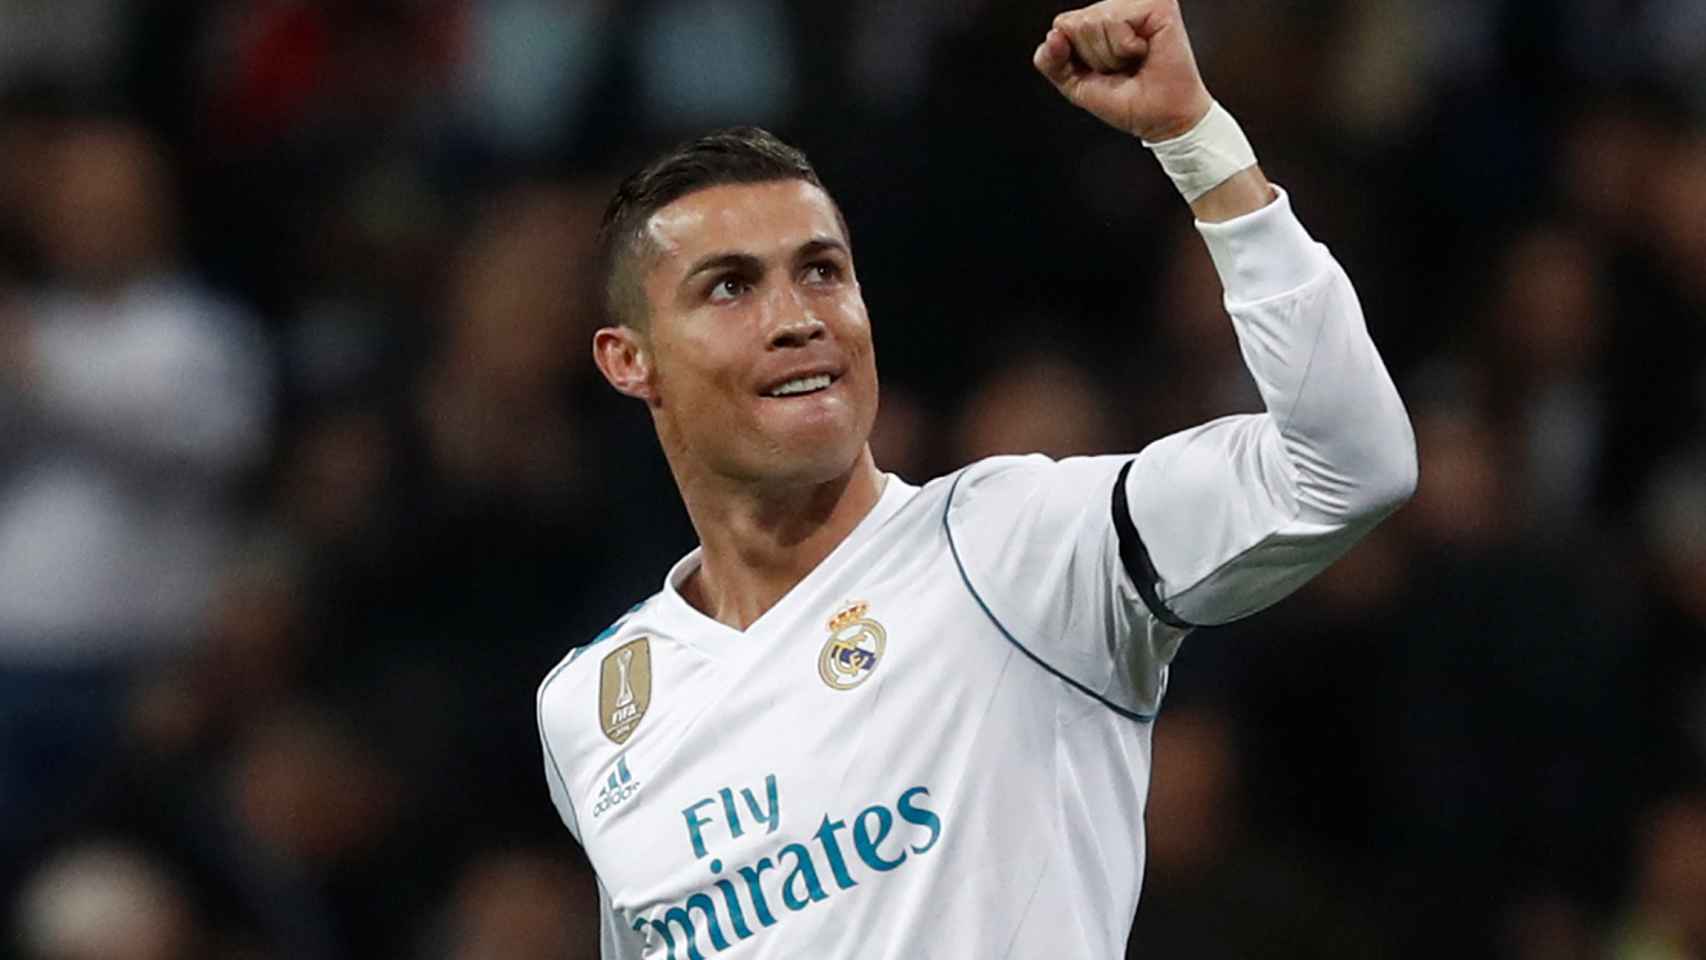 Cristiano Ronaldo celebra un gol.